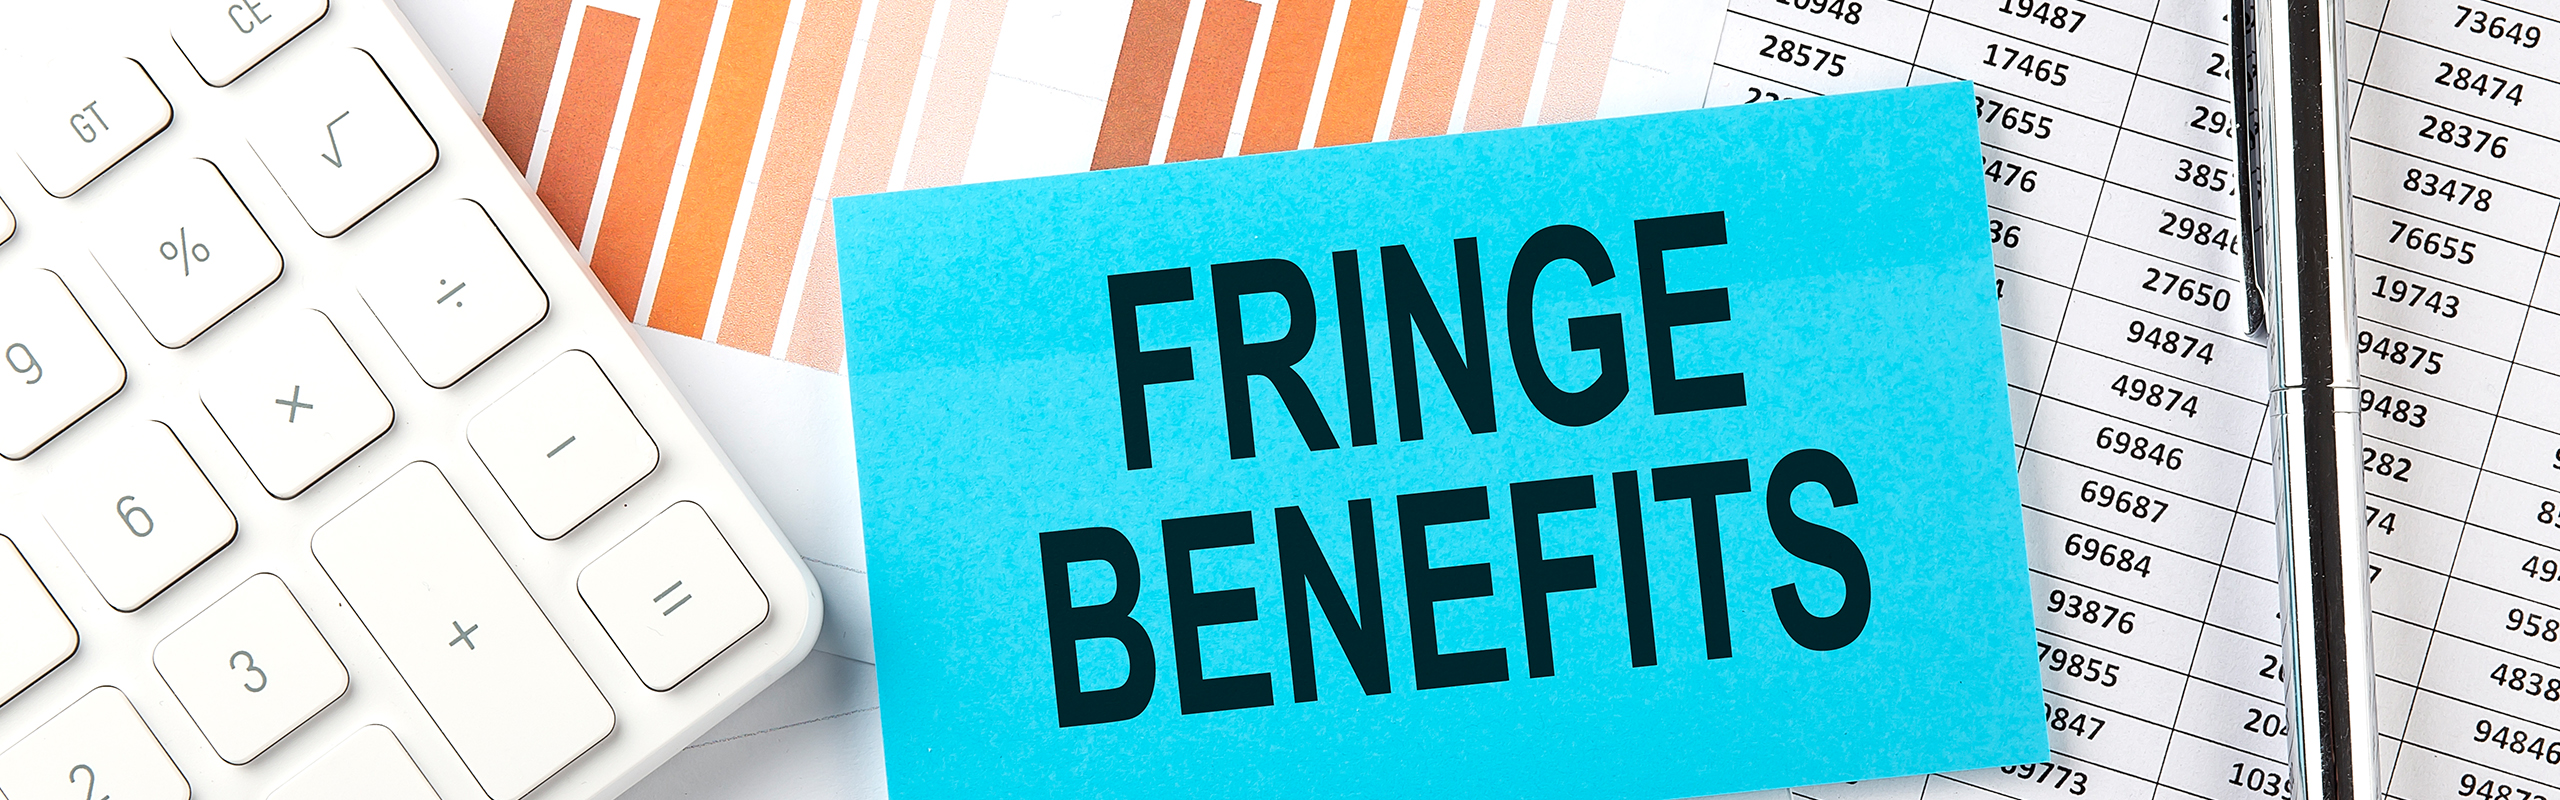 Fringe benefits taxation